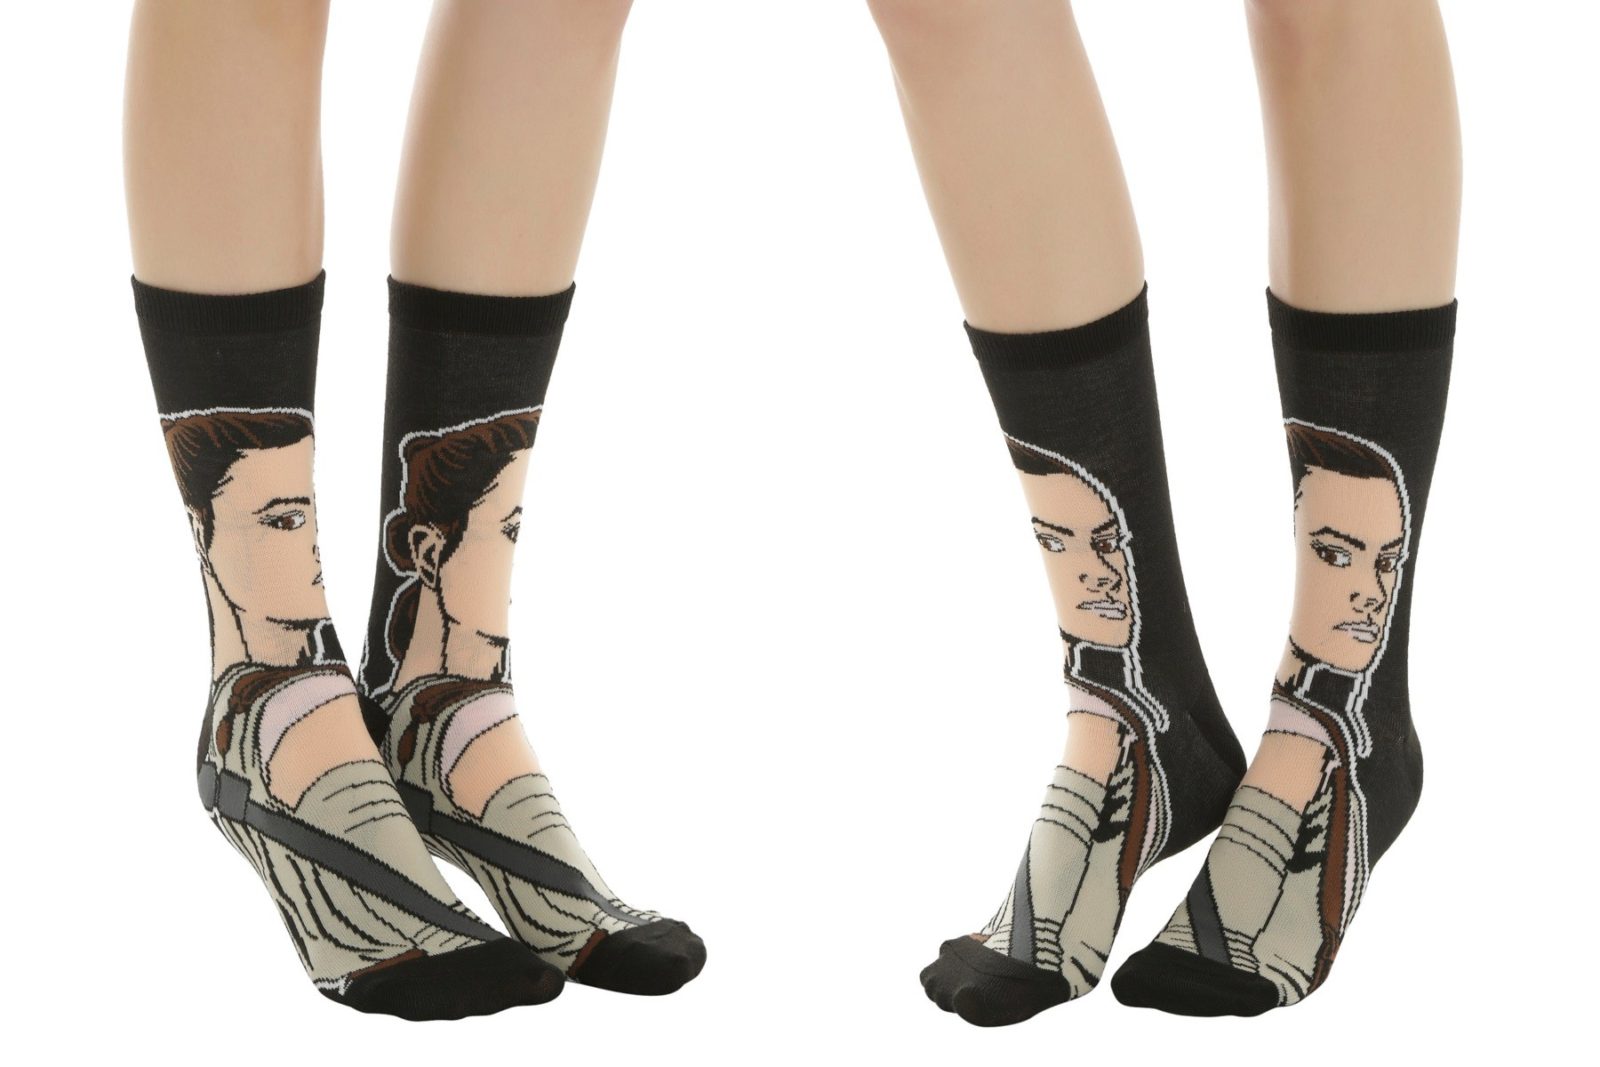 Women’s Rey socks at Hot Topic